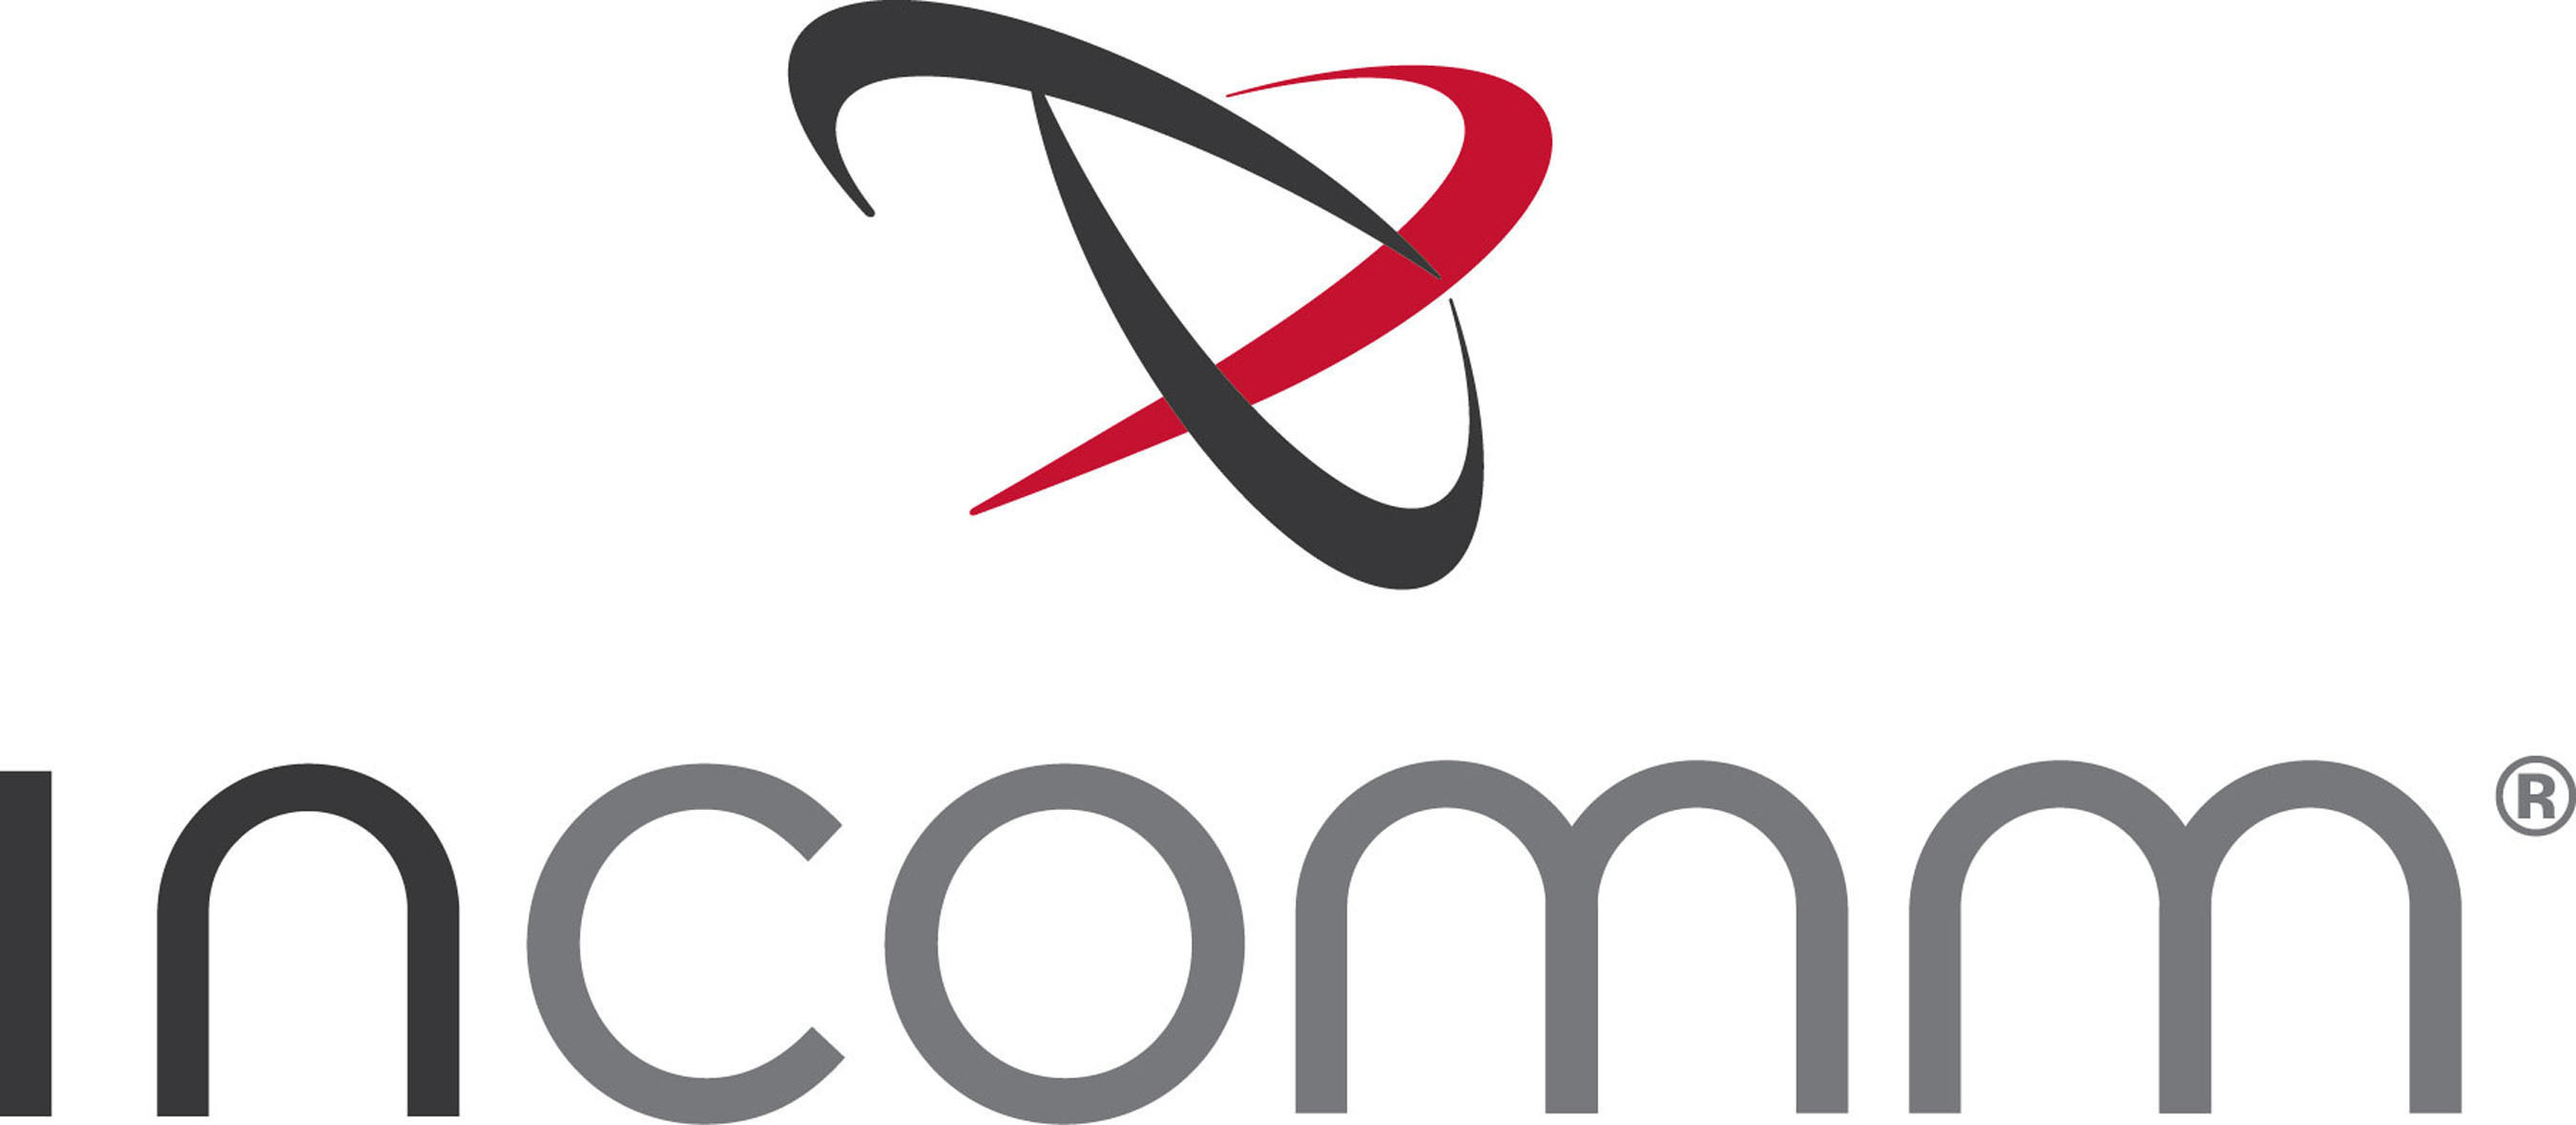 InComm logo. (PRNewsFoto/InComm) (PRNewsFoto/)